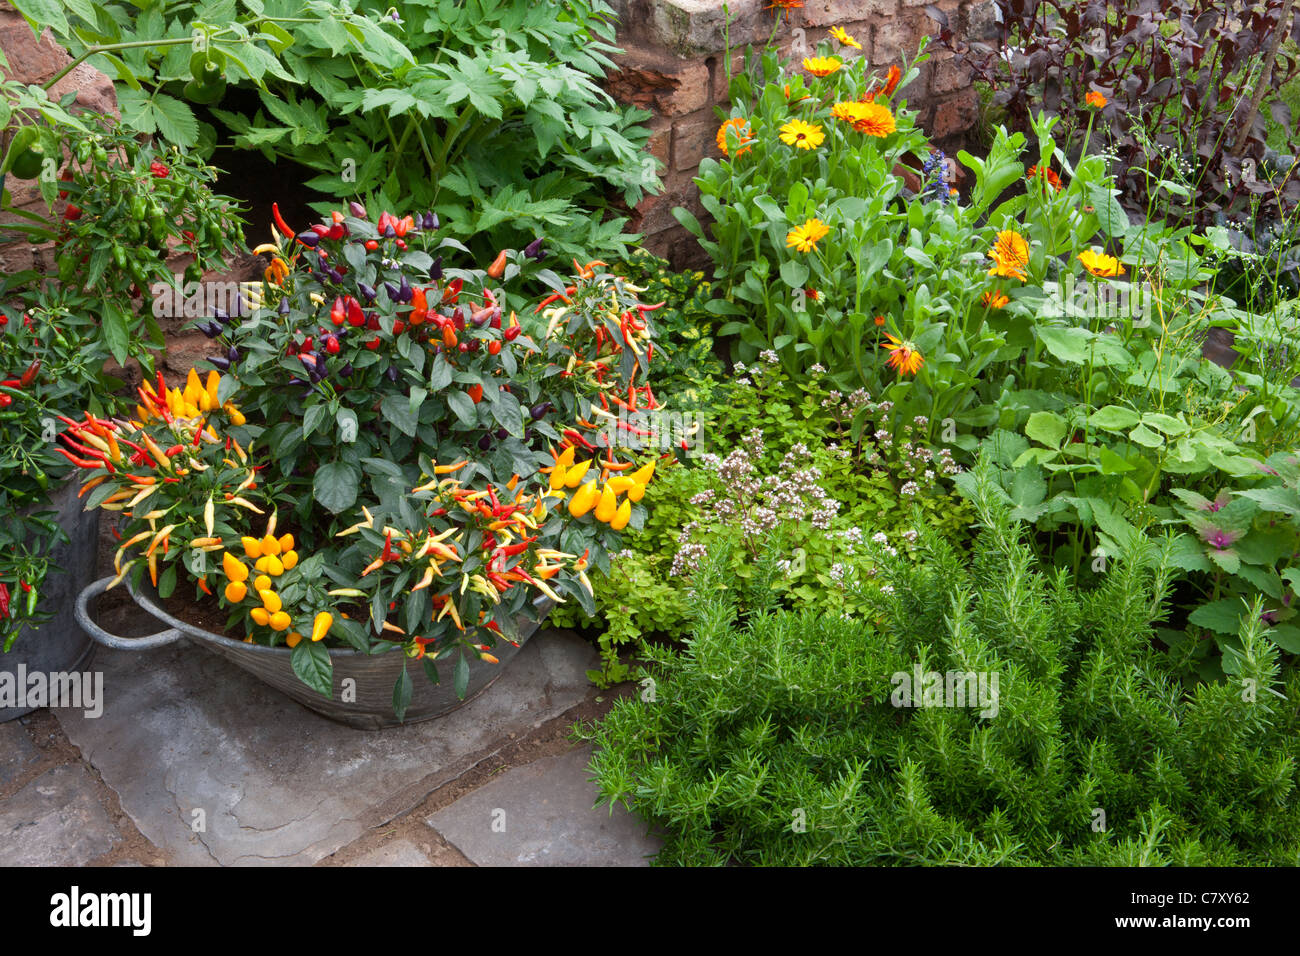 Kleiner Raum Garten mit Chilis Chili Chili Pepper Pflanzen wachsen in einem verzinkten Metallbehälter Pflanztopf im Freien Großbritannien Stockfoto